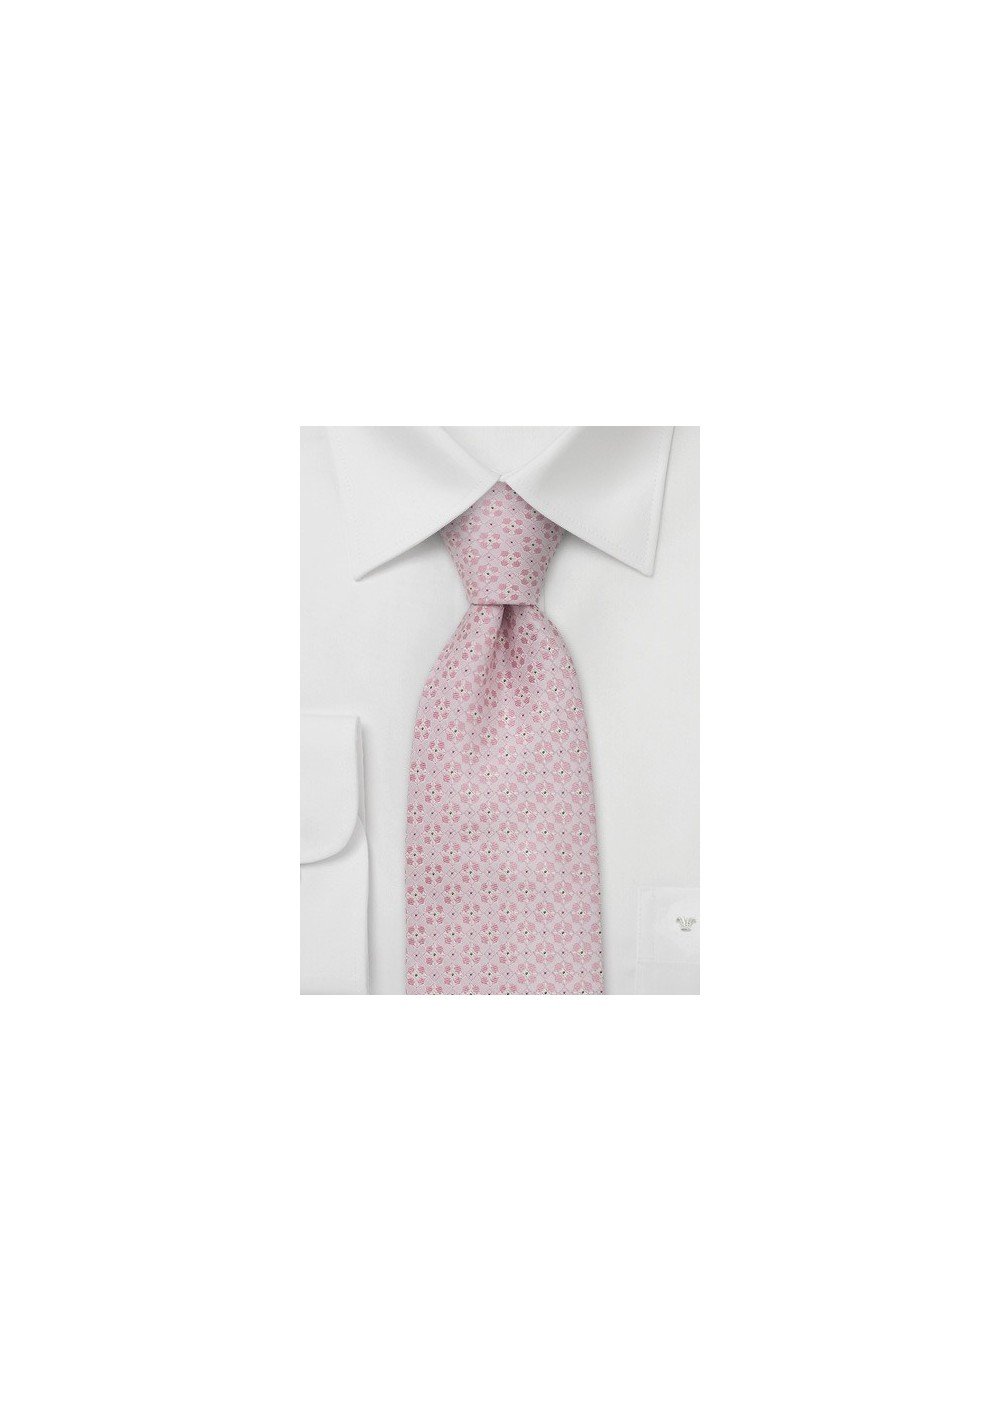 Designer neckties - Handmade silk tie in light pink